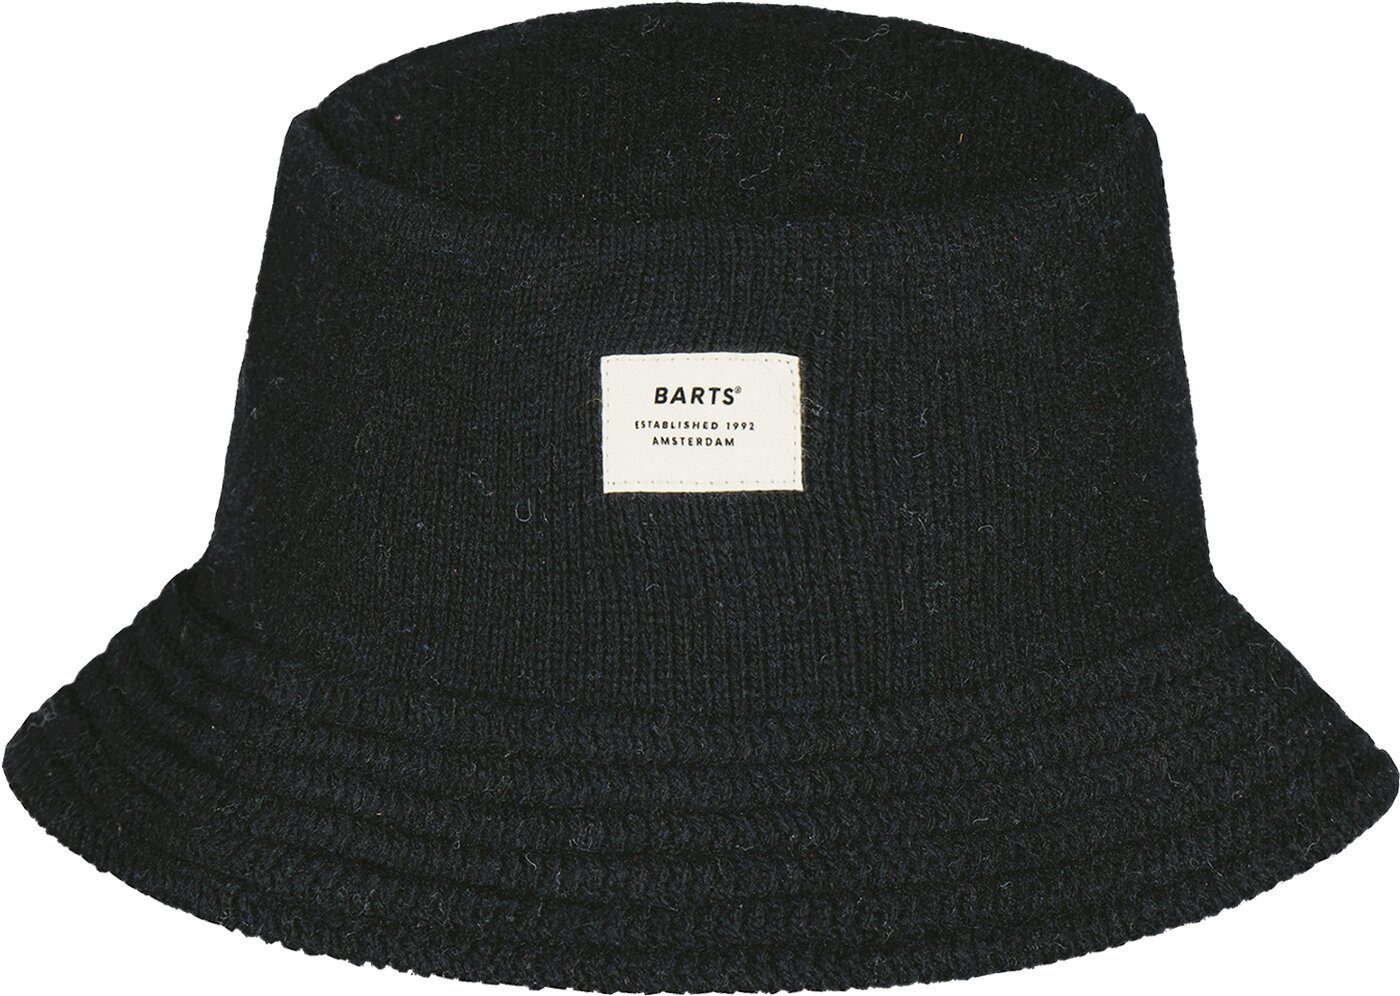 Barts Snapback Hat BLACK Cap Agou